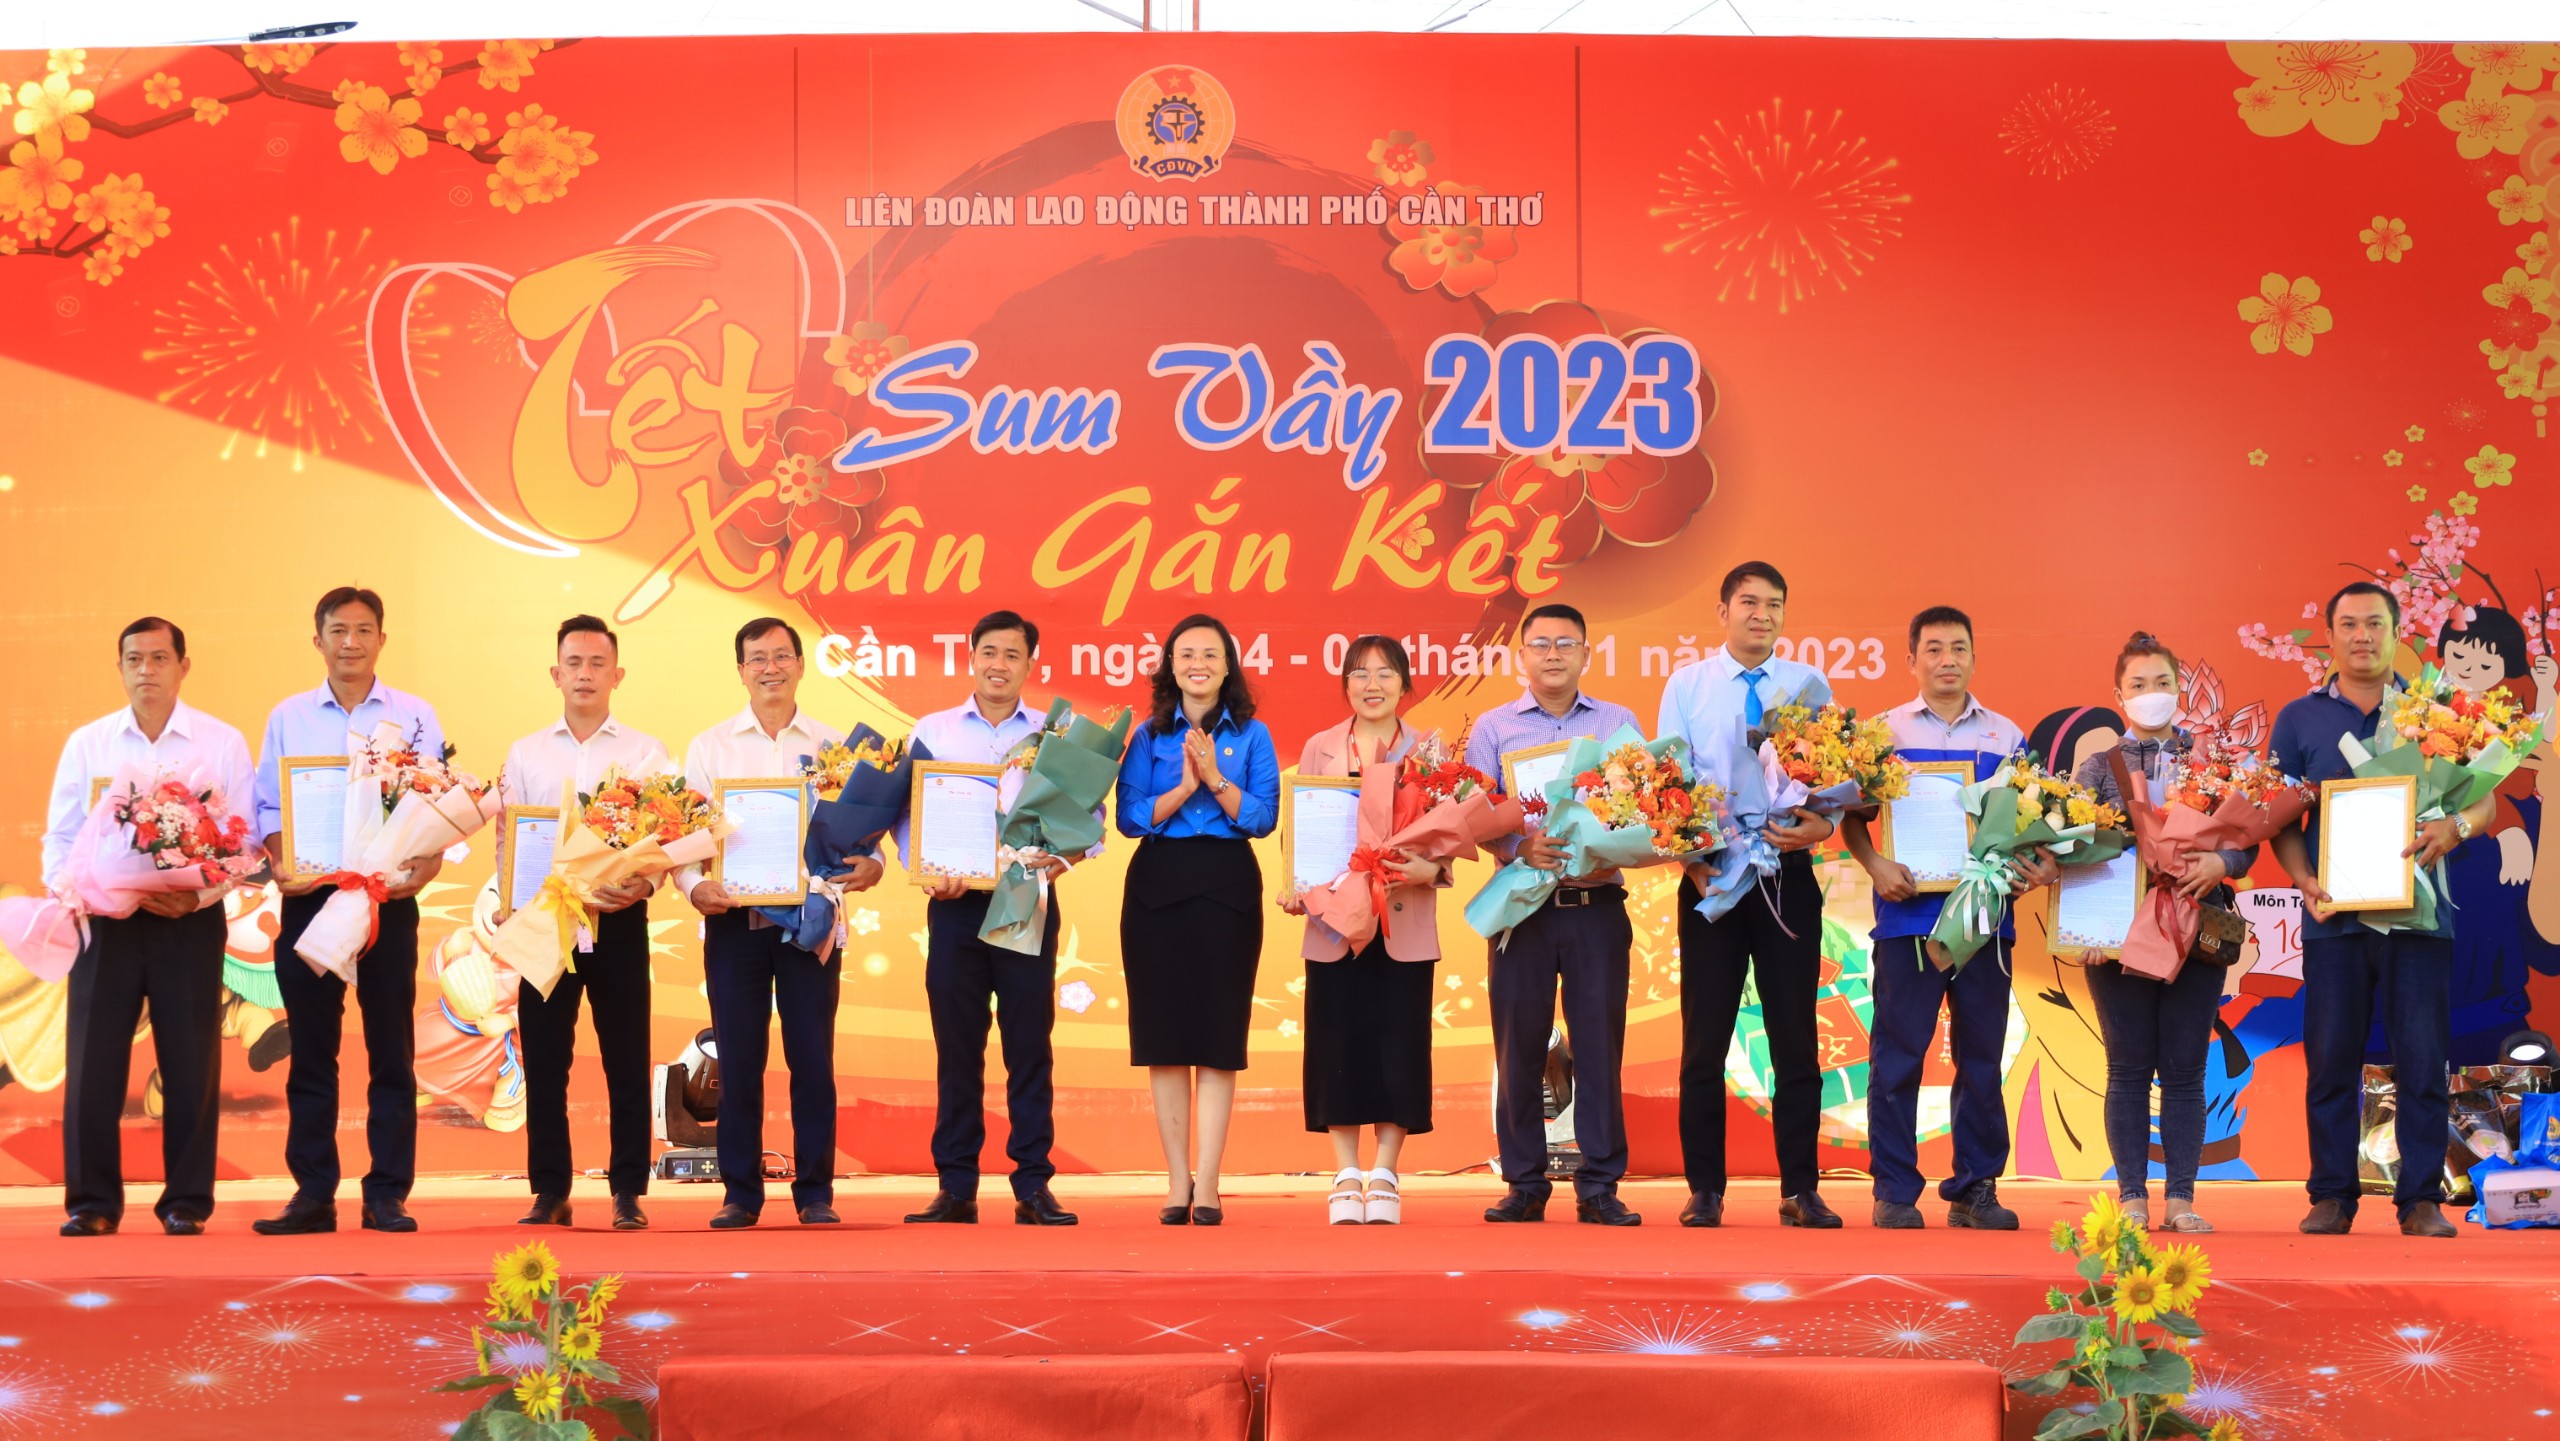 Bà Lê Thị Sương Mai - Chủ tịch Liên đoàn lao động TP. Cần Thơ tặng hoa cho các đơn vị tài trợ, đồng hành cùng chương trình.